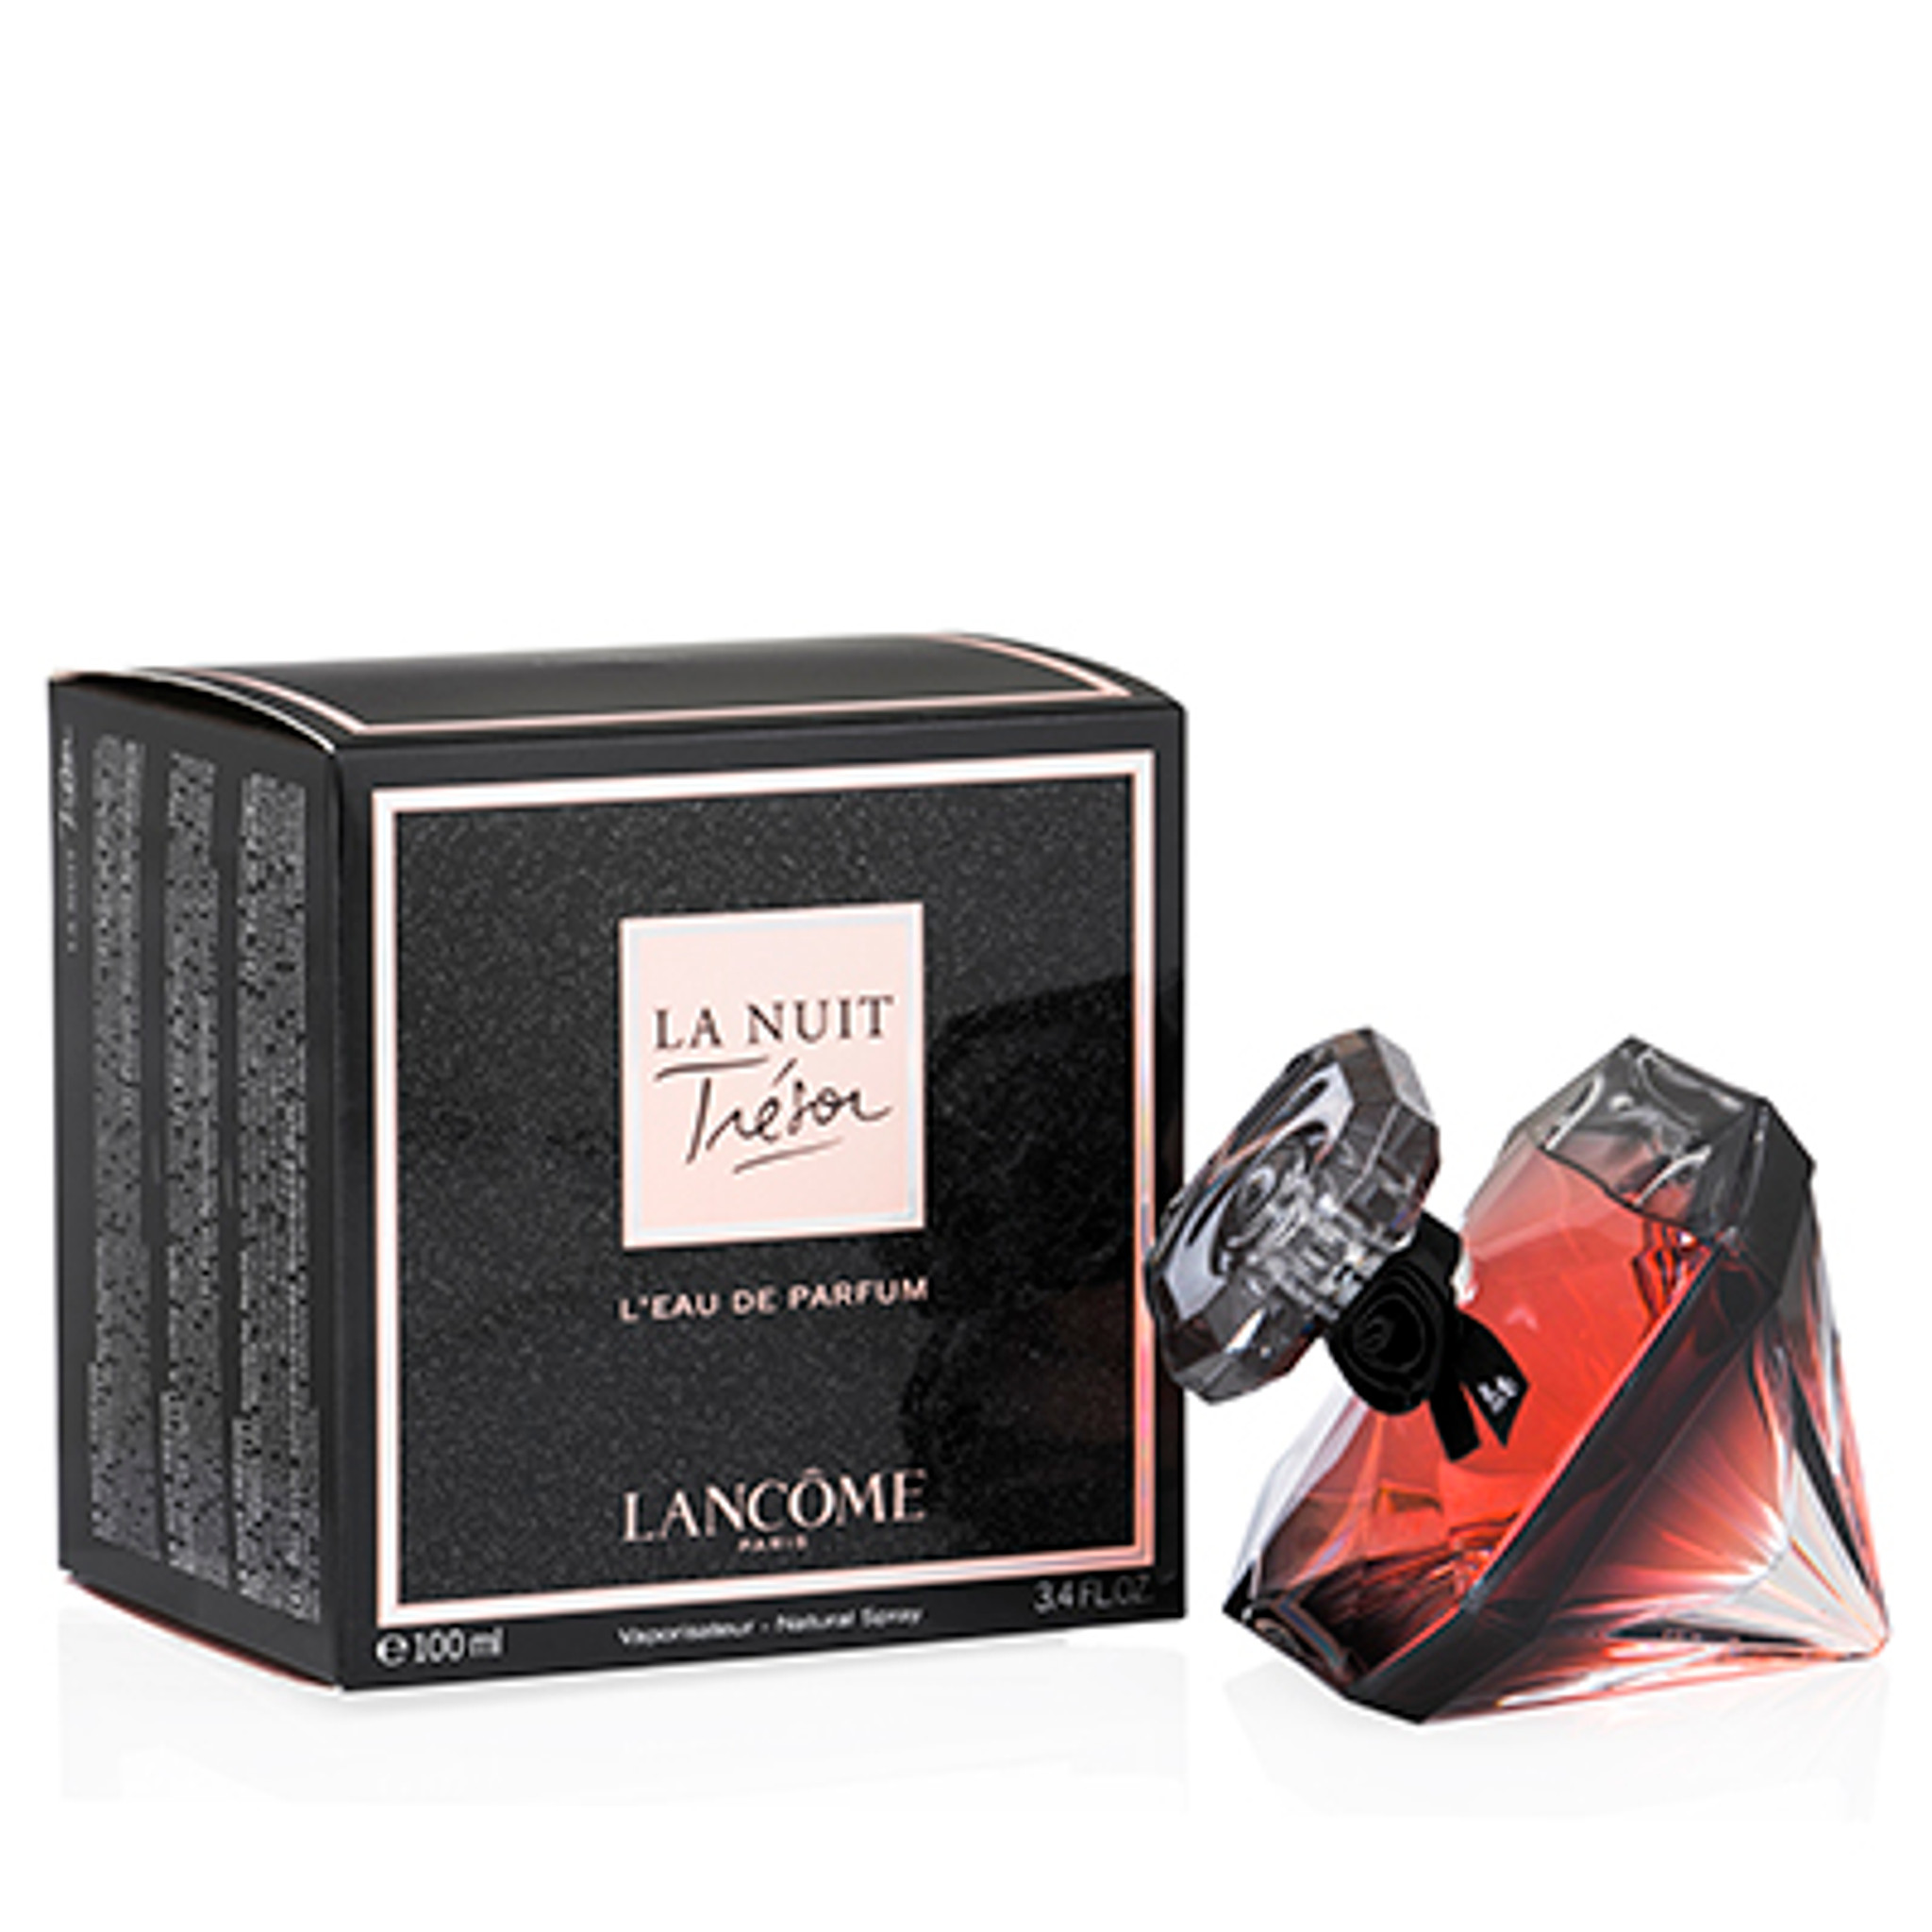 Lancome La Nuit Tresor Eau de Parfum, Perfume for Women, 1.7 Oz